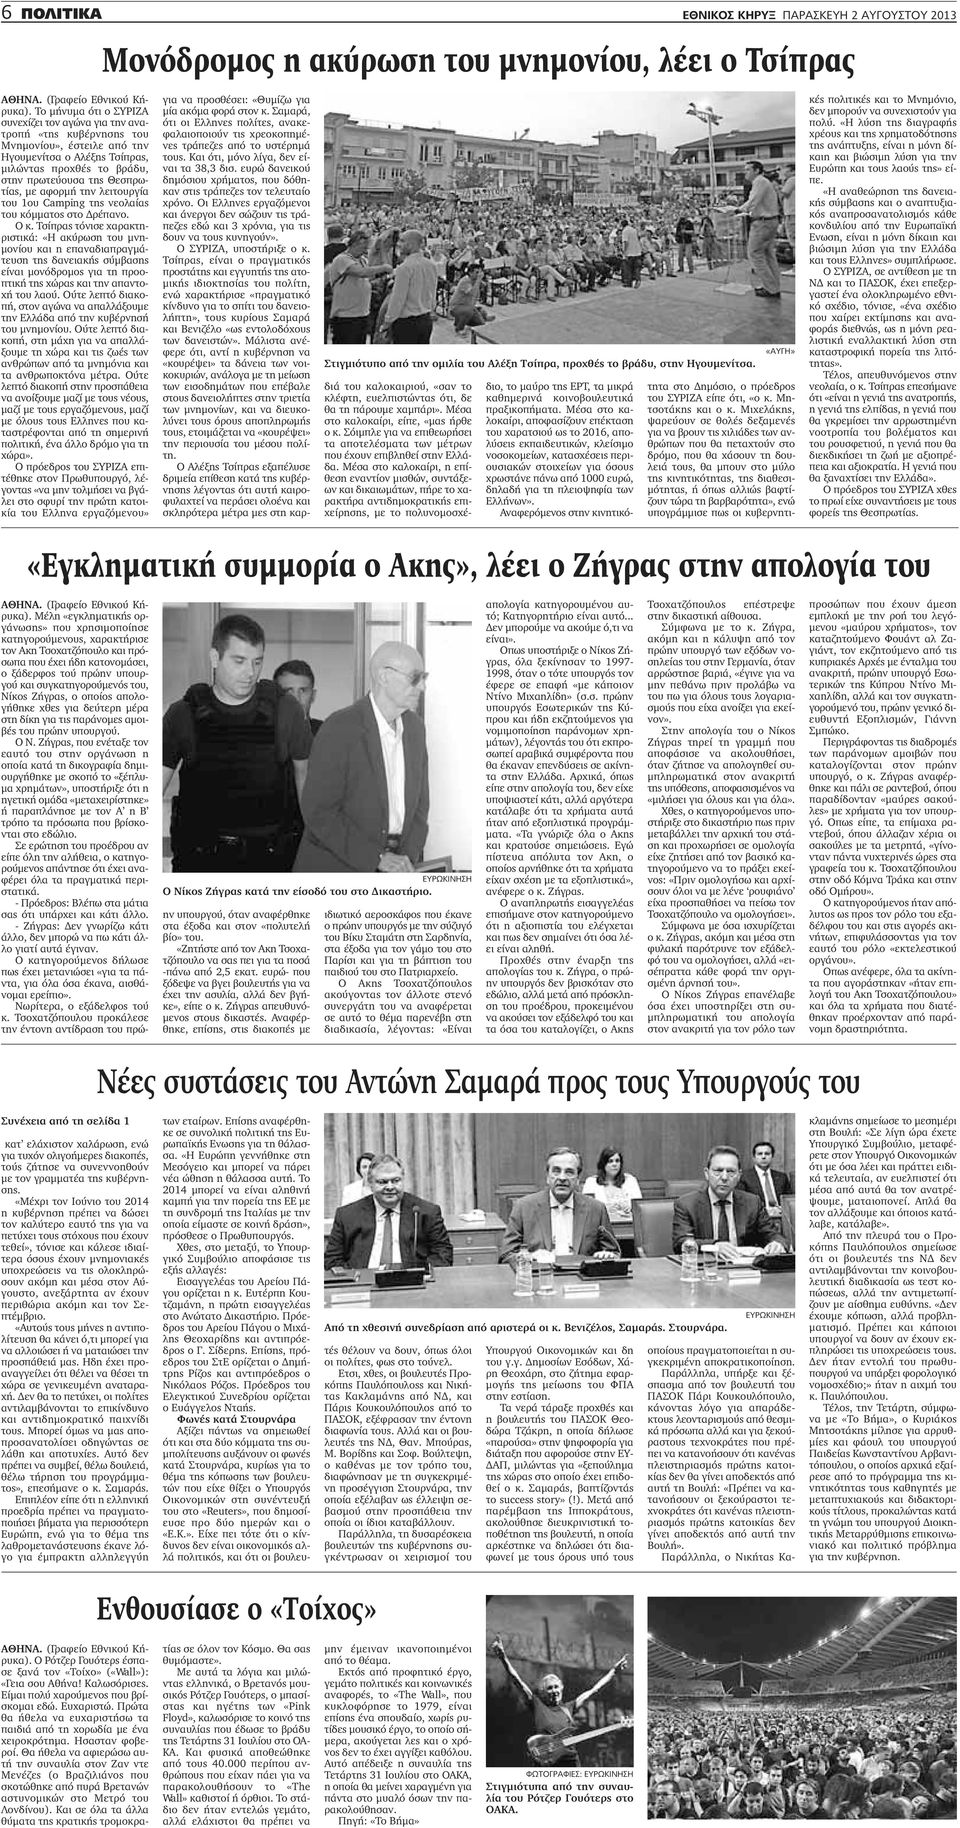 Τσίπρας τόνισε χαρακτηριστικά: «Η ακύρωση του μνημονίου και η επαναδιαπραγμάτευση της δανειακής σύμβασης είναι μονόδρομος για τη προοπτική της χώρας και την απαντοχή του λαού.